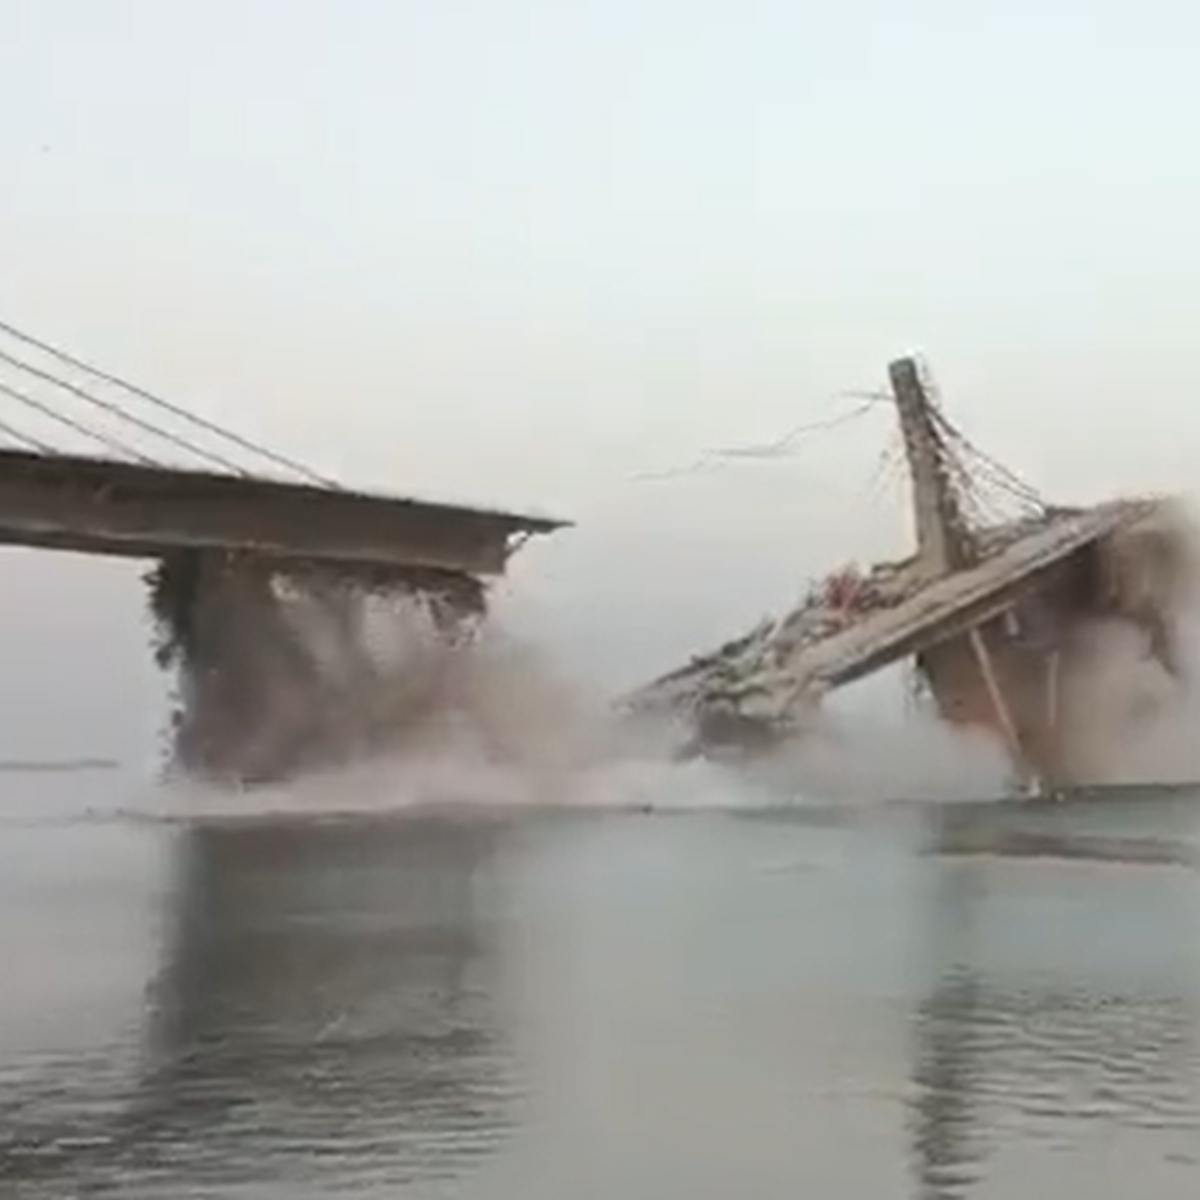  VÍDEO: Ponte suspensa em construção desaba sobre rio 